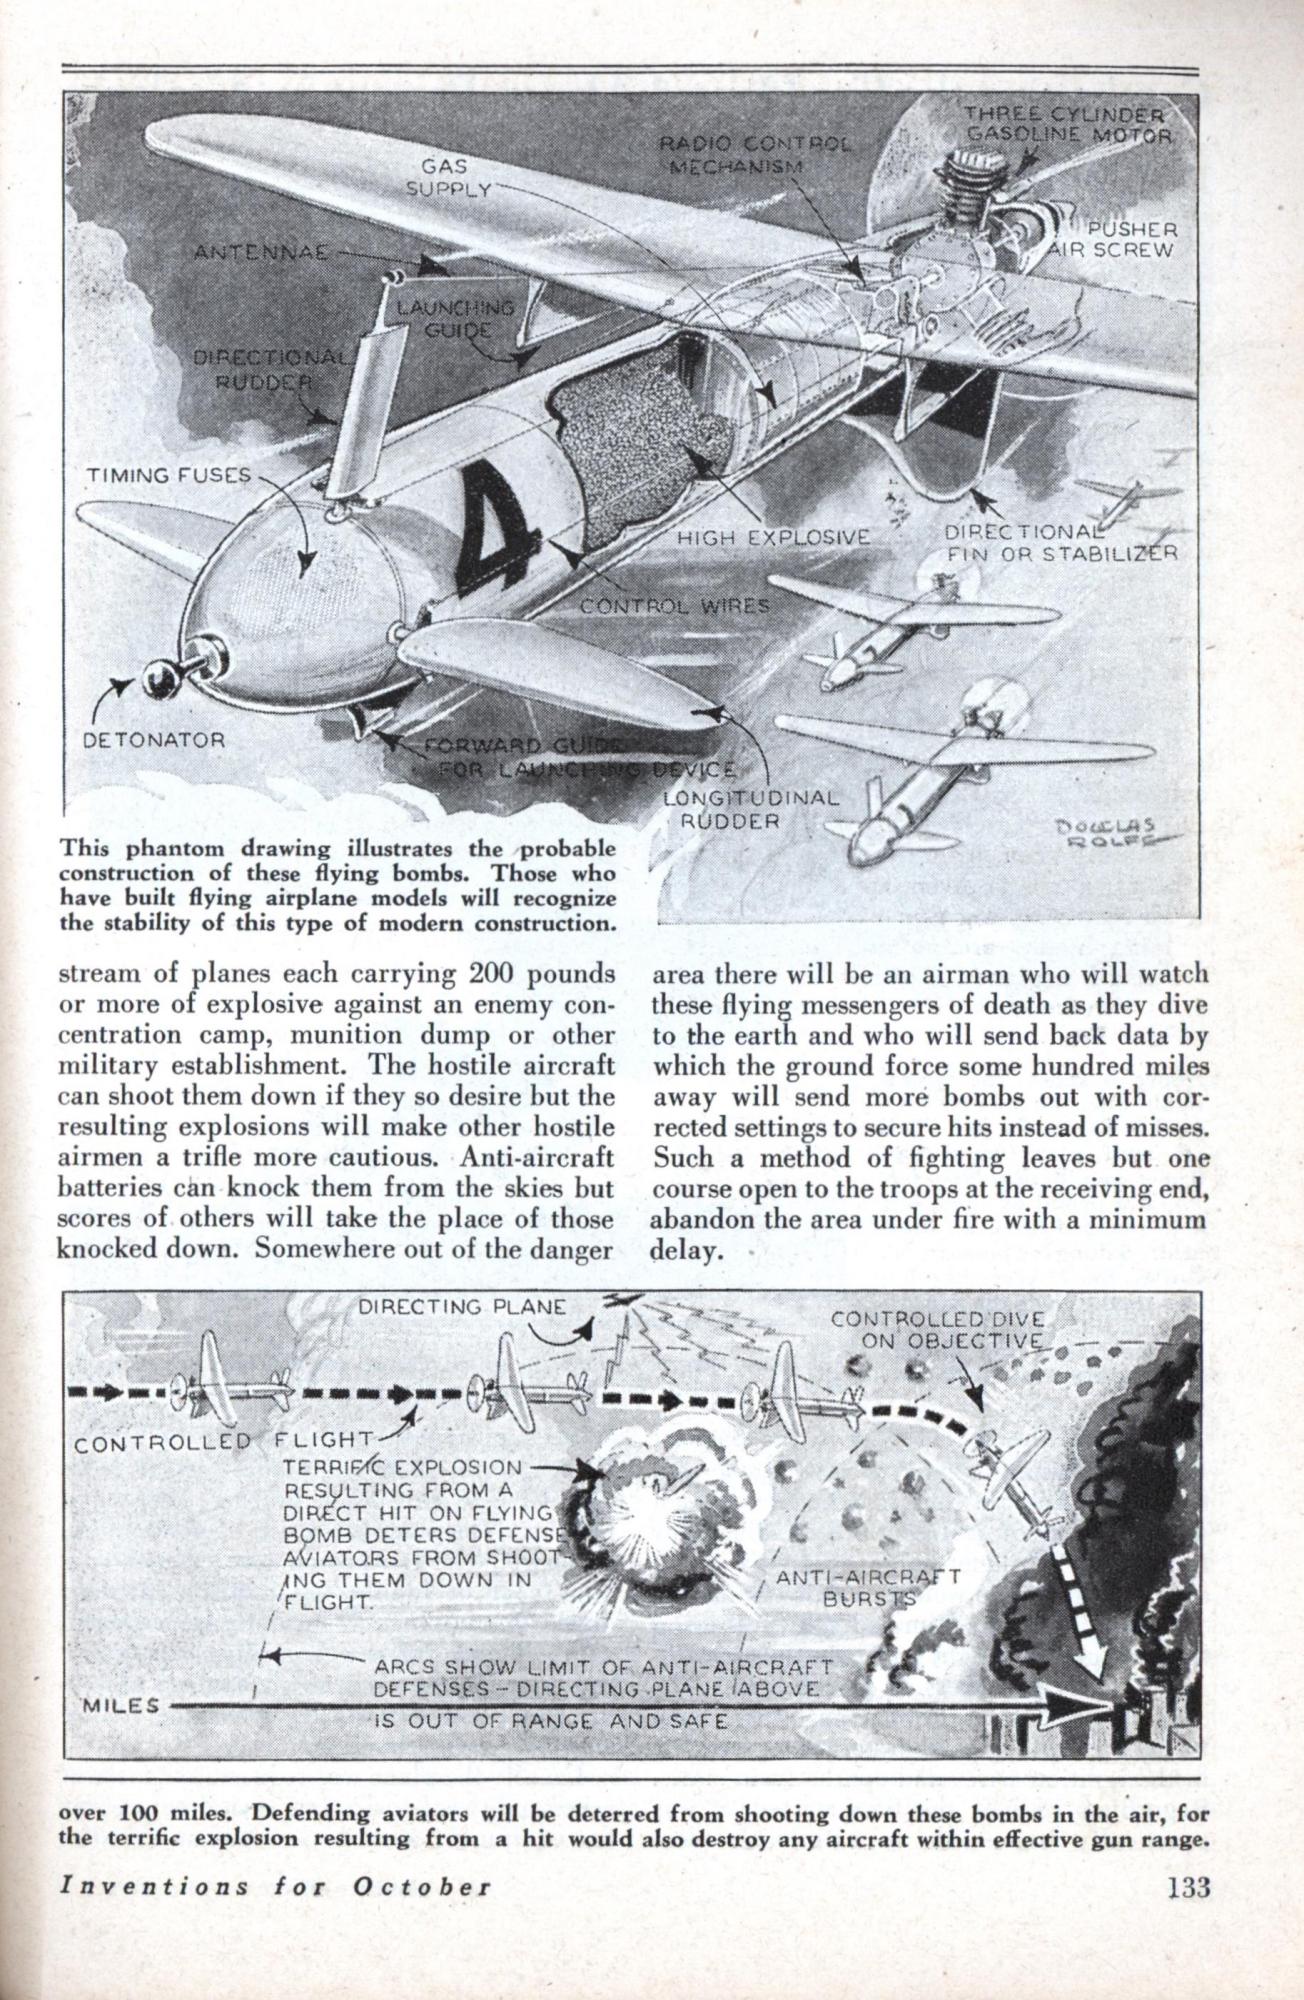 Фантазии на тему будущего военной техники из научно-популярных журналов 30-х годов. Часть 2.